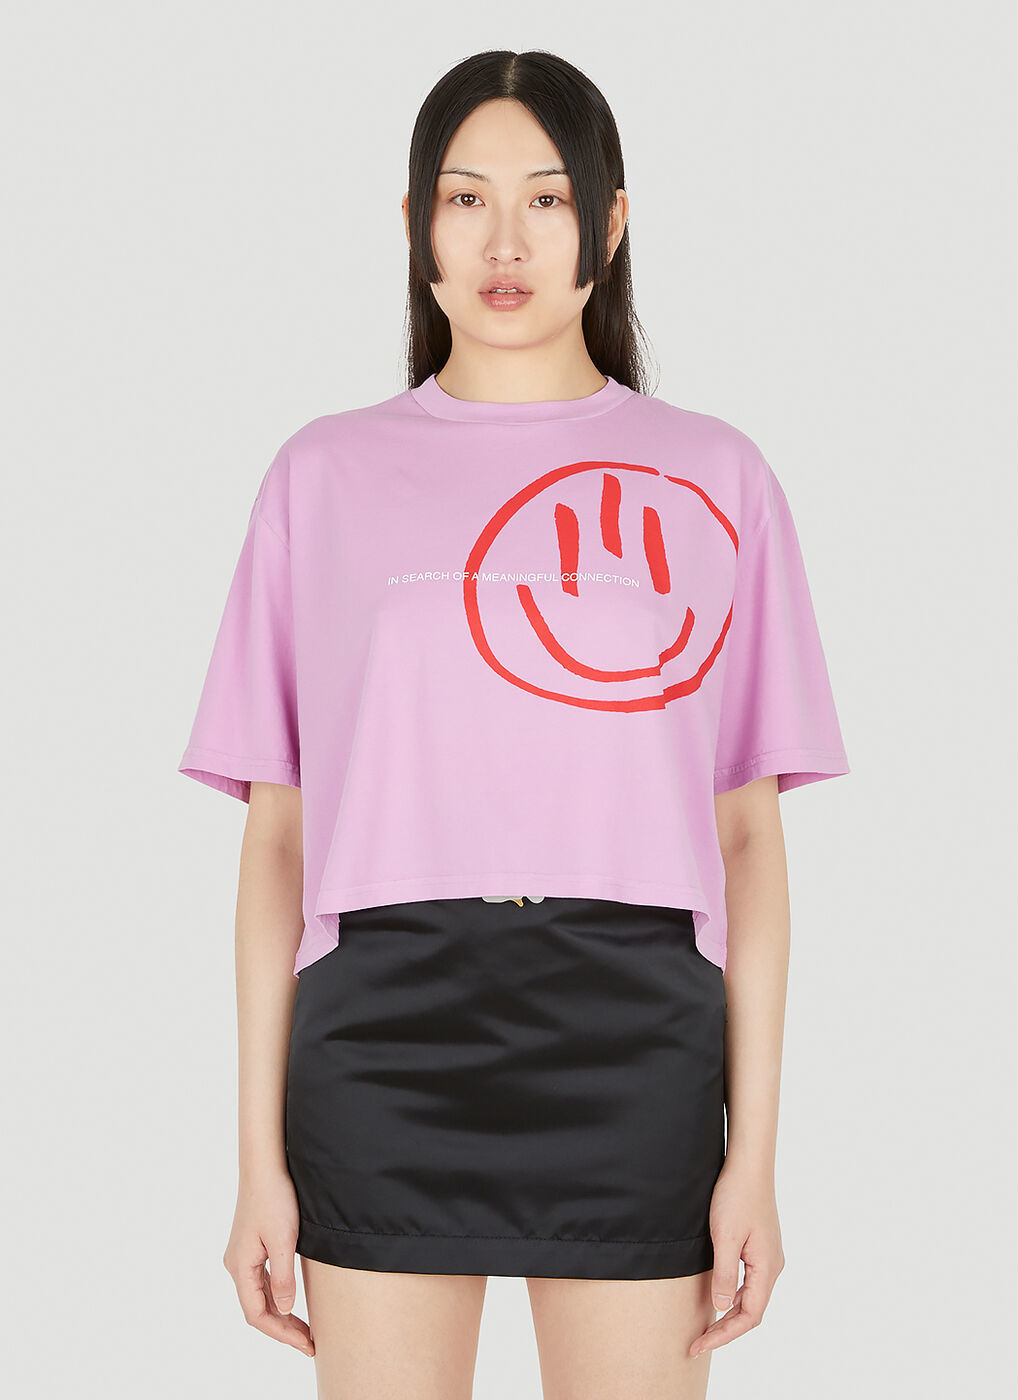 Third Eye Cropped T-Shirt in Pink